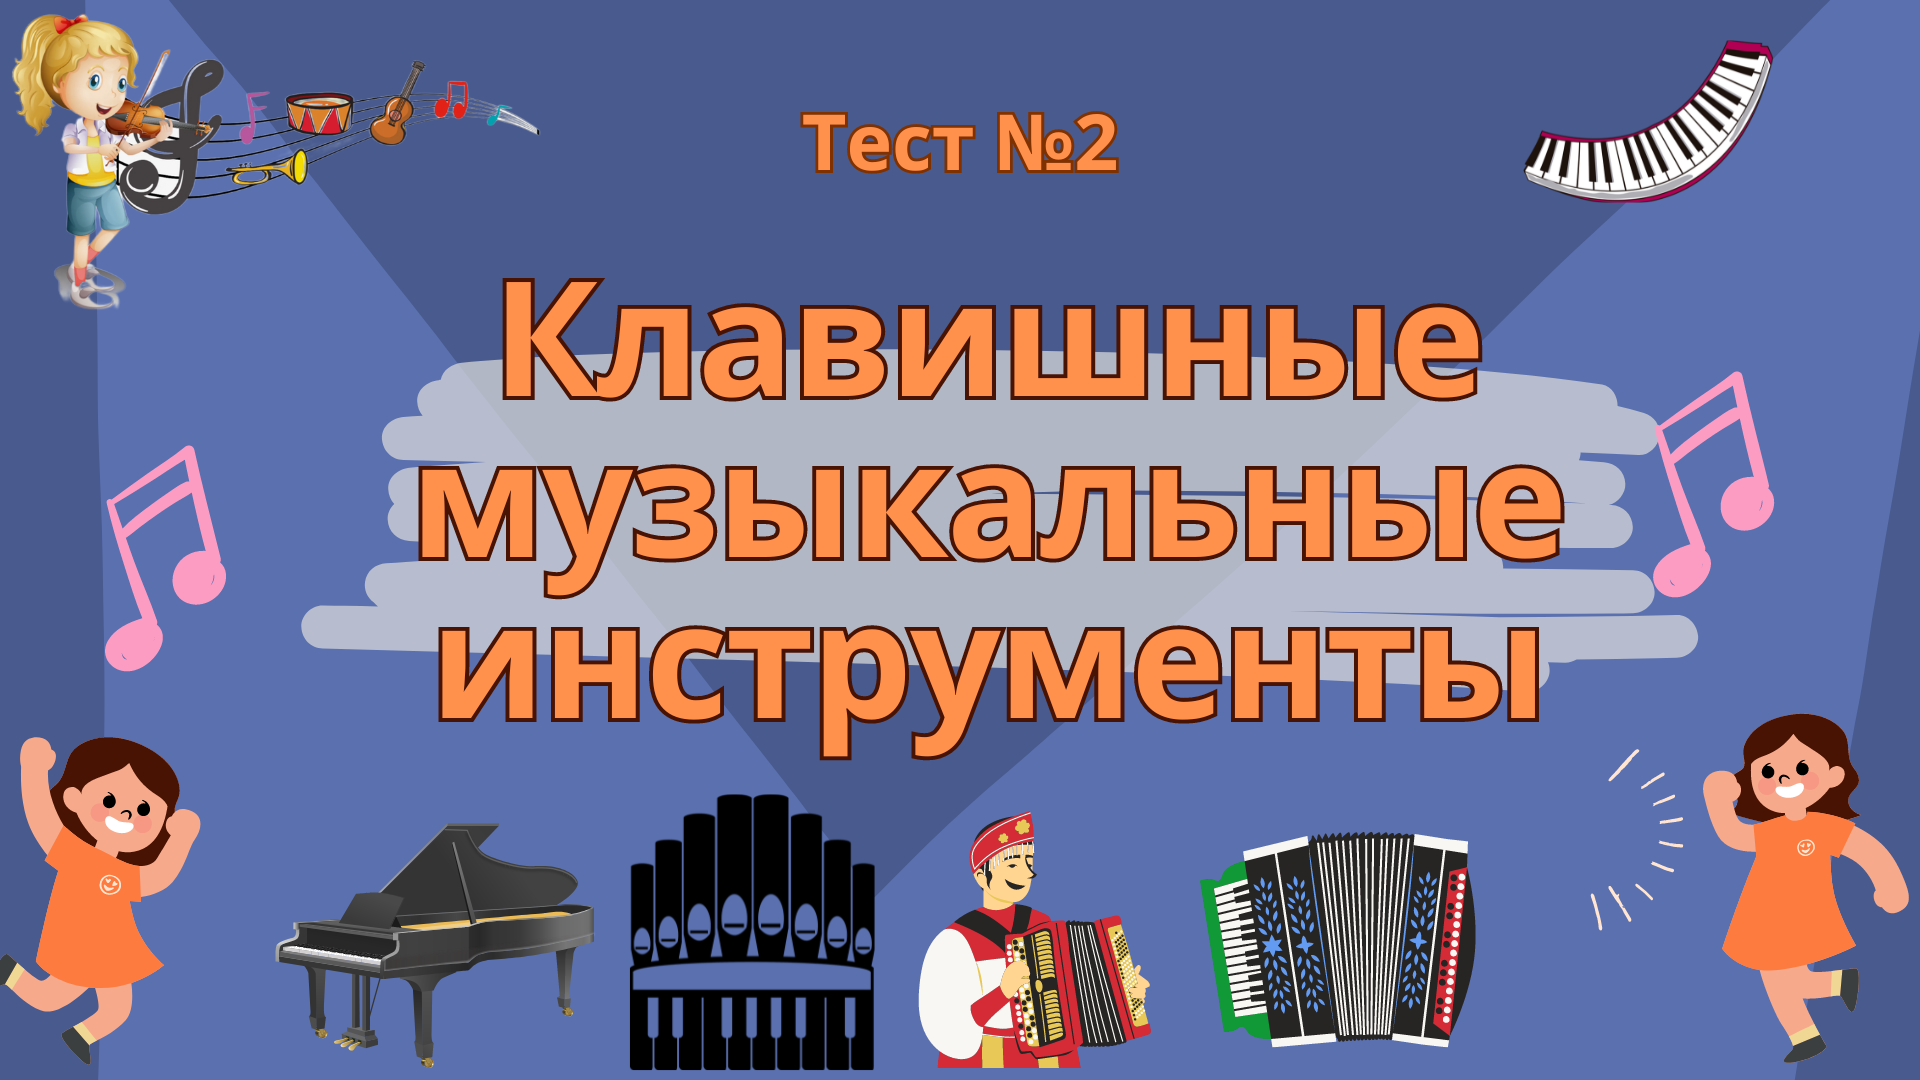 Тест №2 "Клавишные музыкальные инструменты"